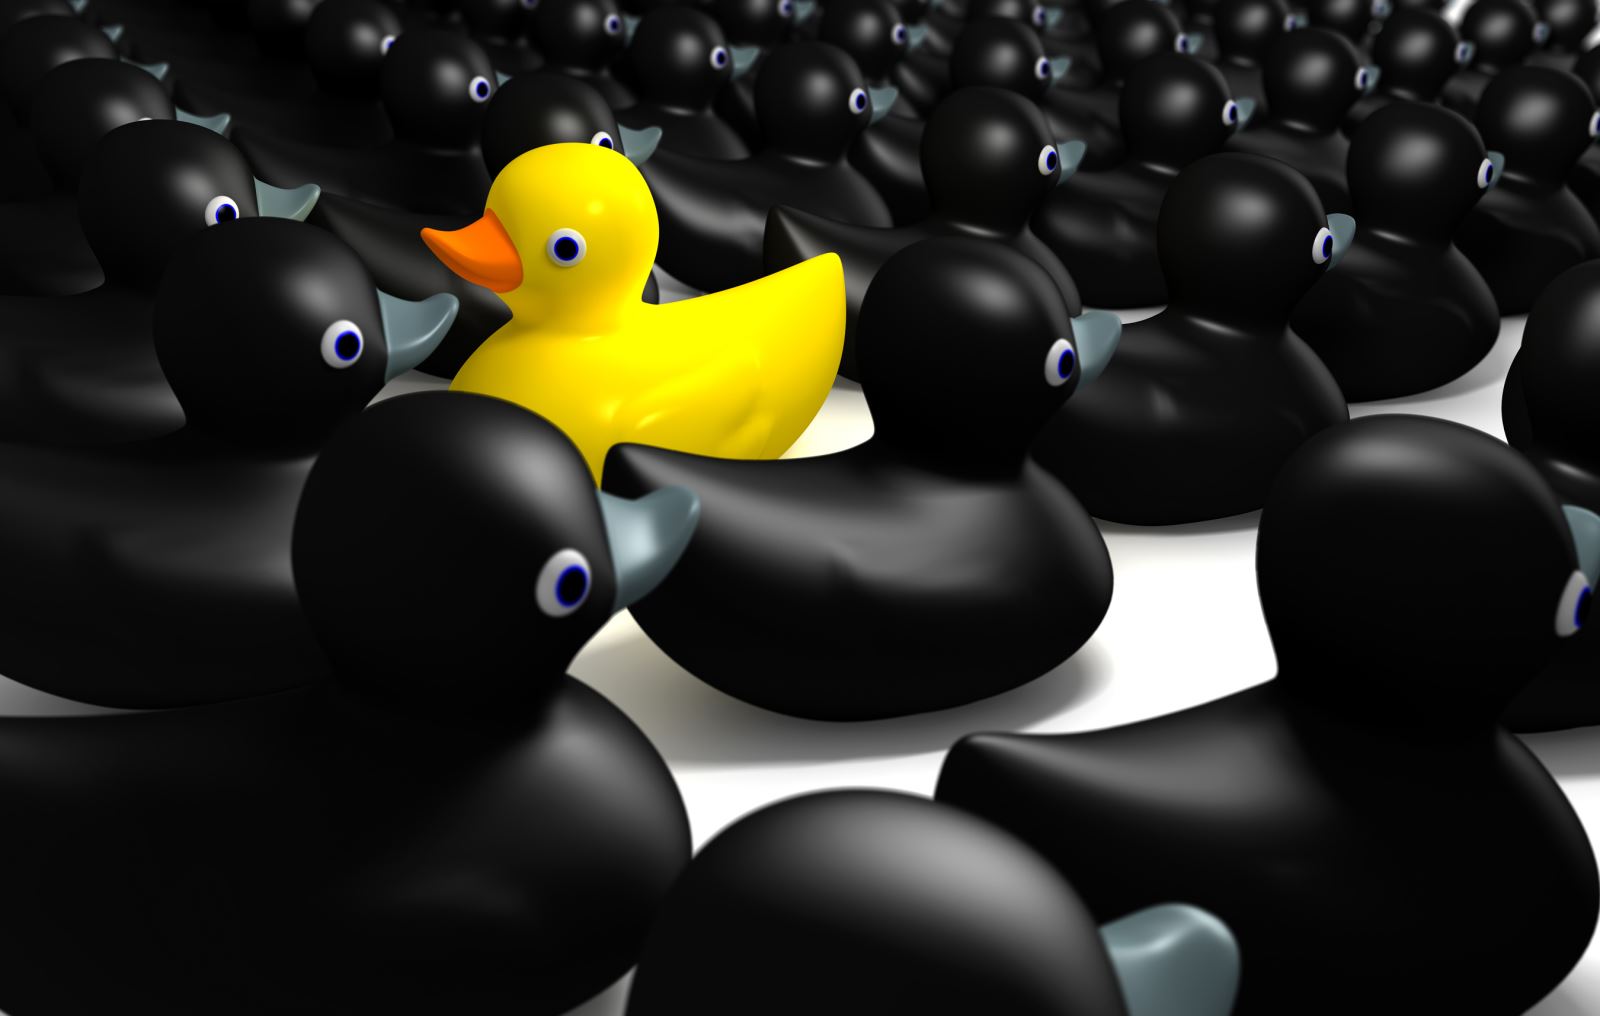 שיווק דיגיטלי B2B ברווז צהוב עם ברווזים שחורים יצירת מחויבות מקוונת בשיווק B2B